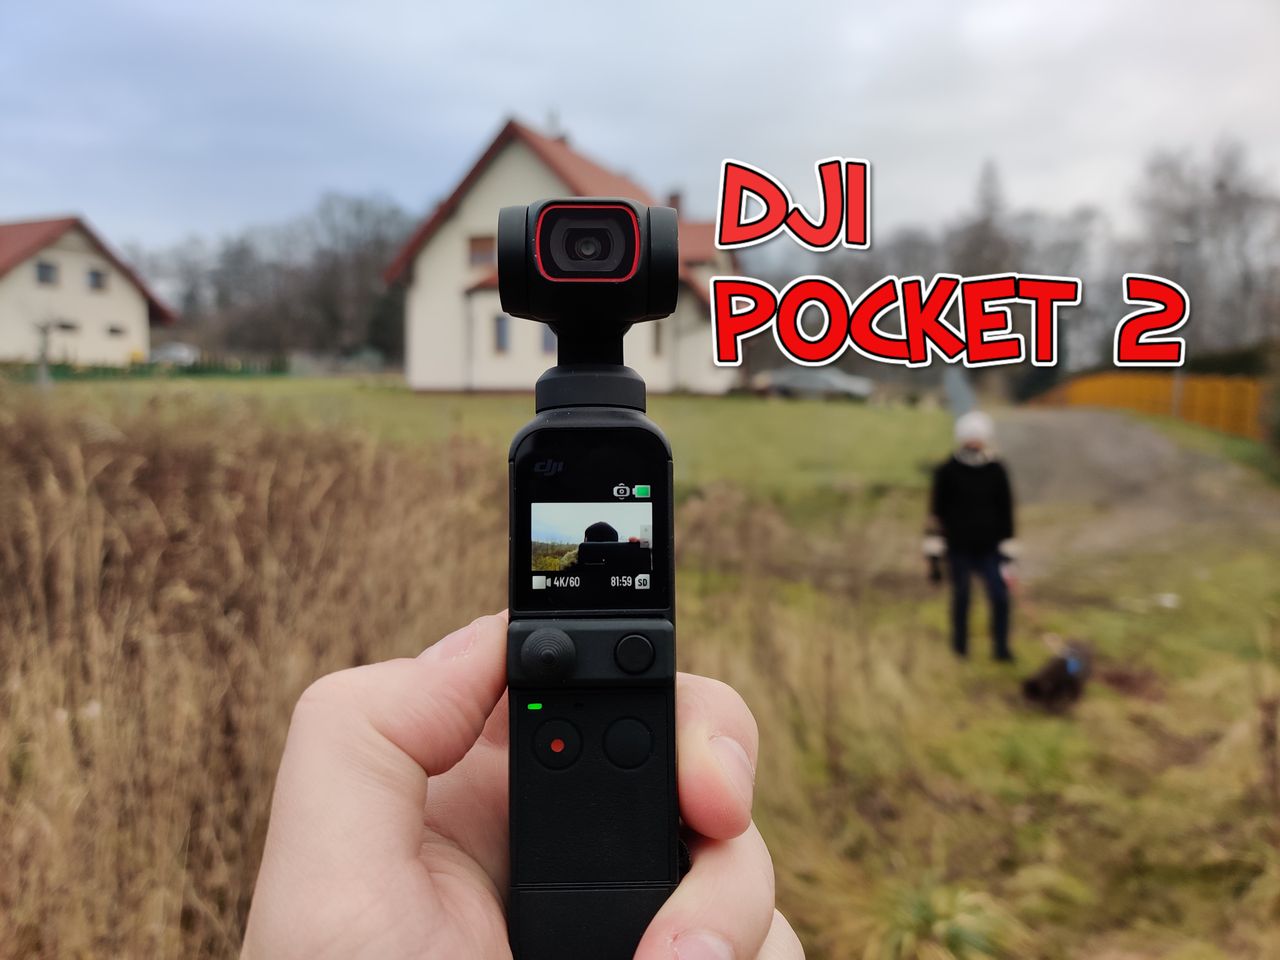 DJI Pocket 2 - jeszcze więcej ulepszeń w małej kamerce turystycznej [recenzja]